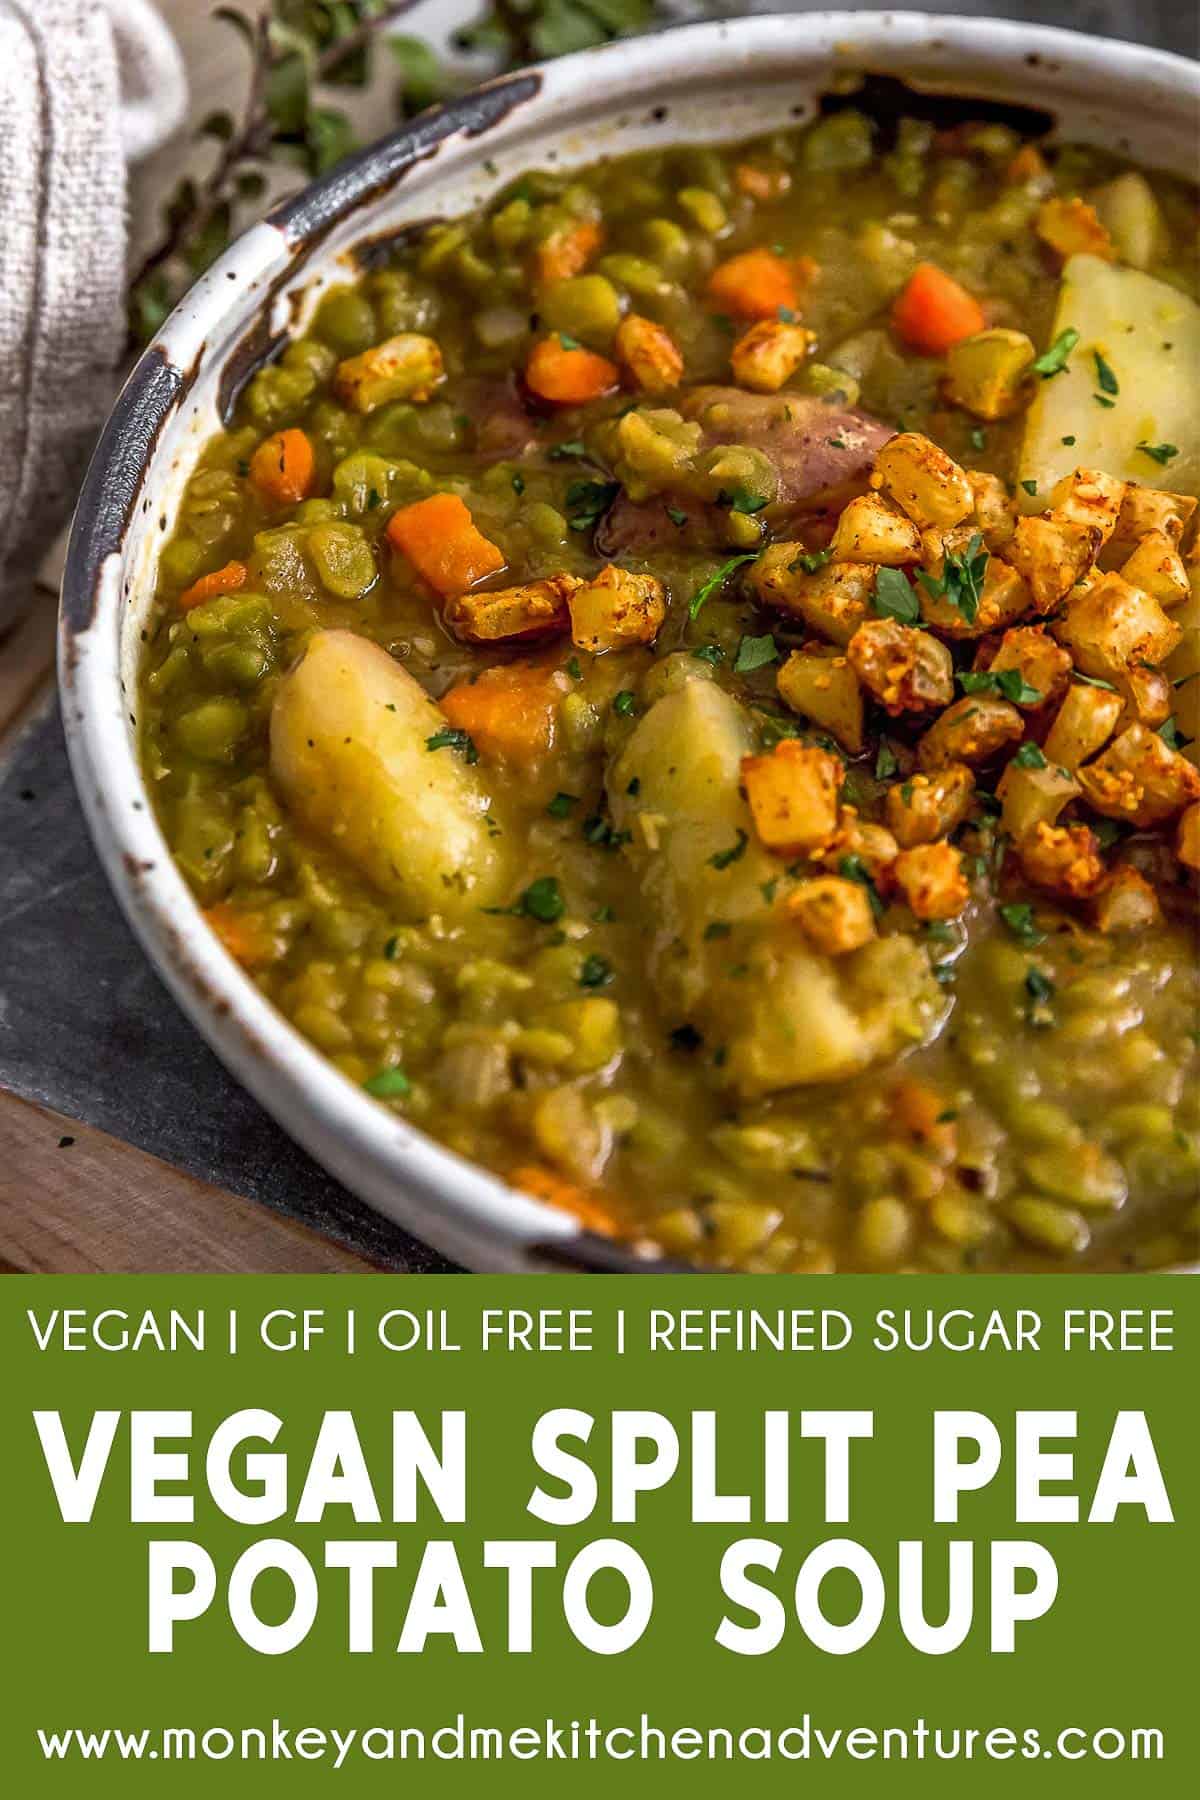 Vegan Split Pea Potato Soup with text description